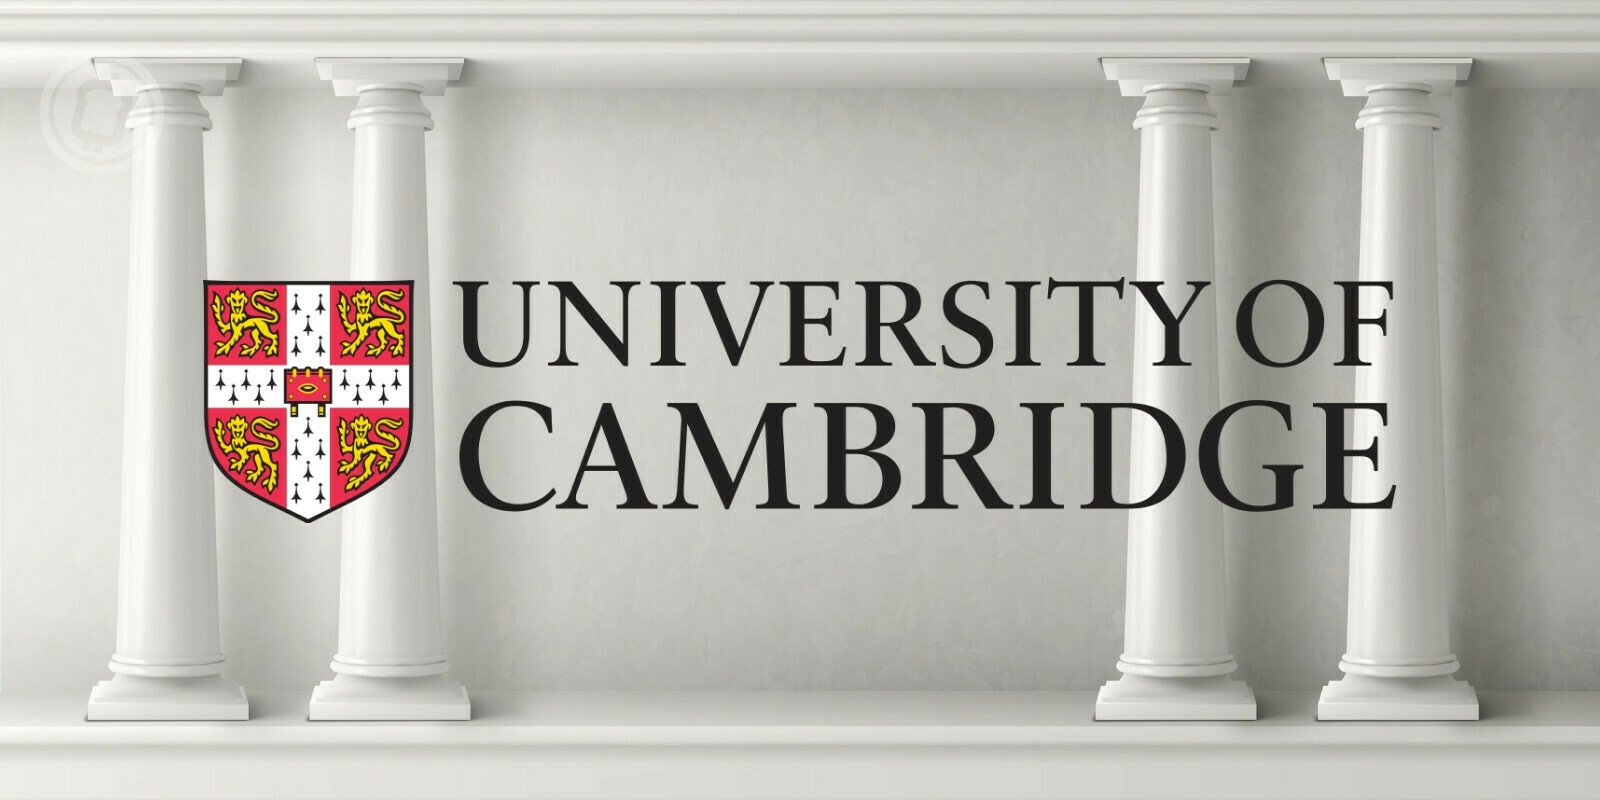 L'université de Cambridge mène une étude globale des cryptomonnaies aux côtés du FMI et de la BRI